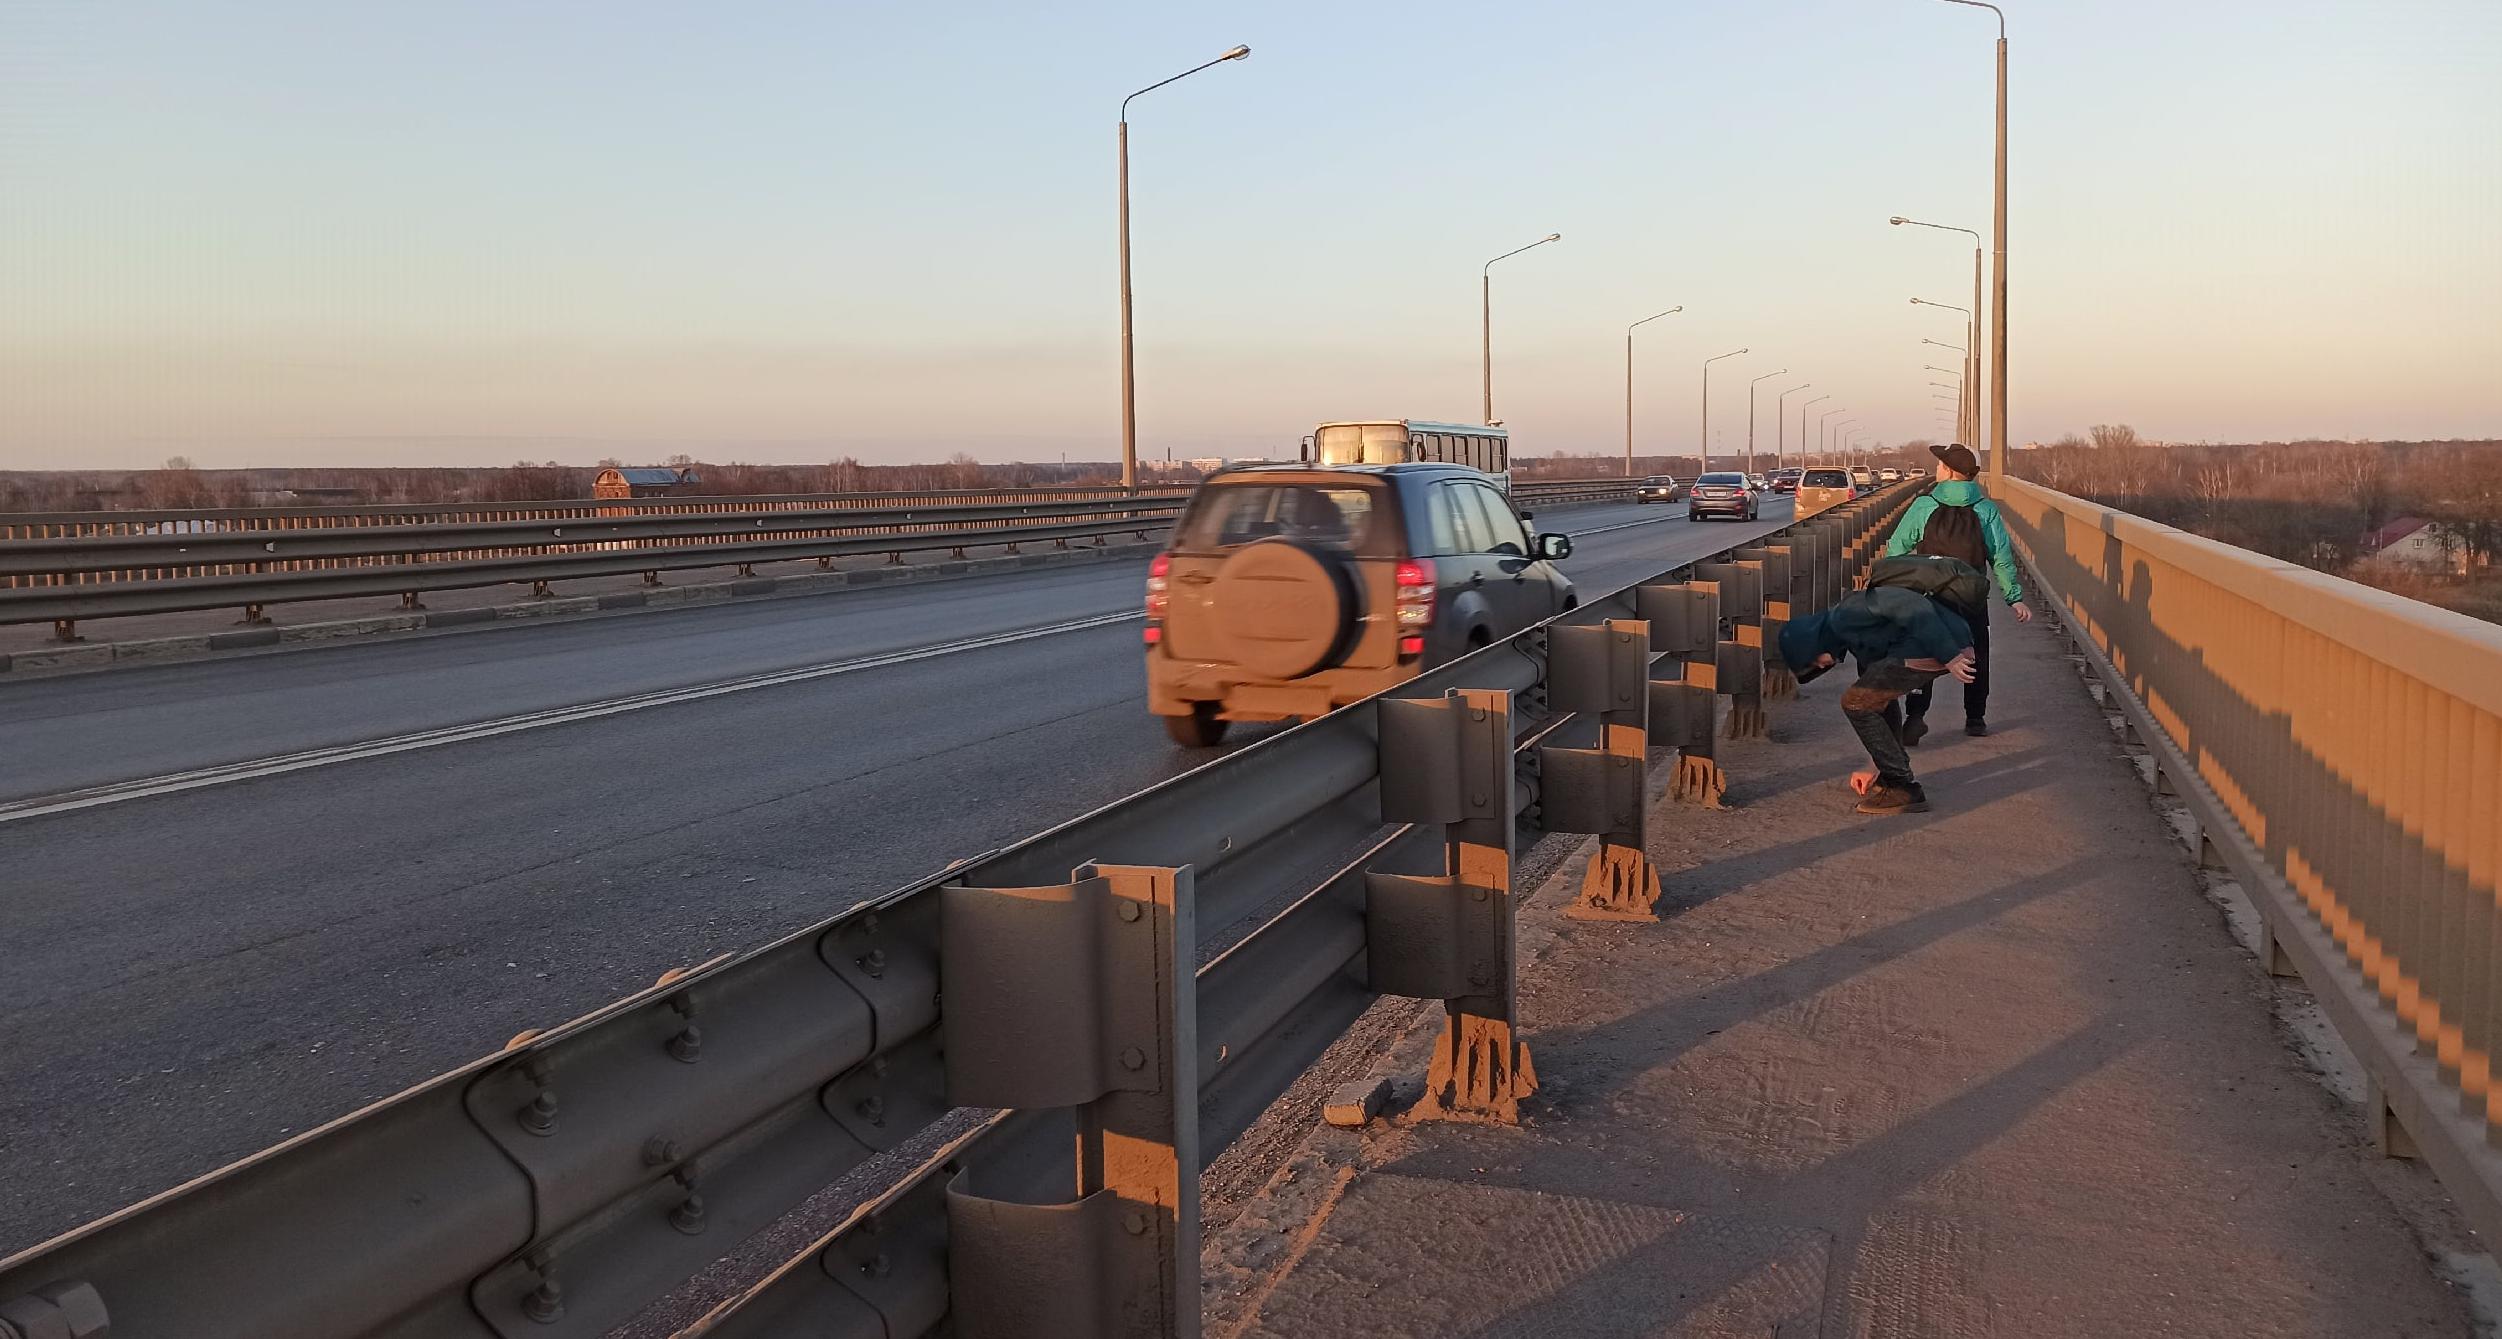  "Там ямы уже!": в Ярославле начинают ремонт Октябрьского моста за 50 миллионов рублей